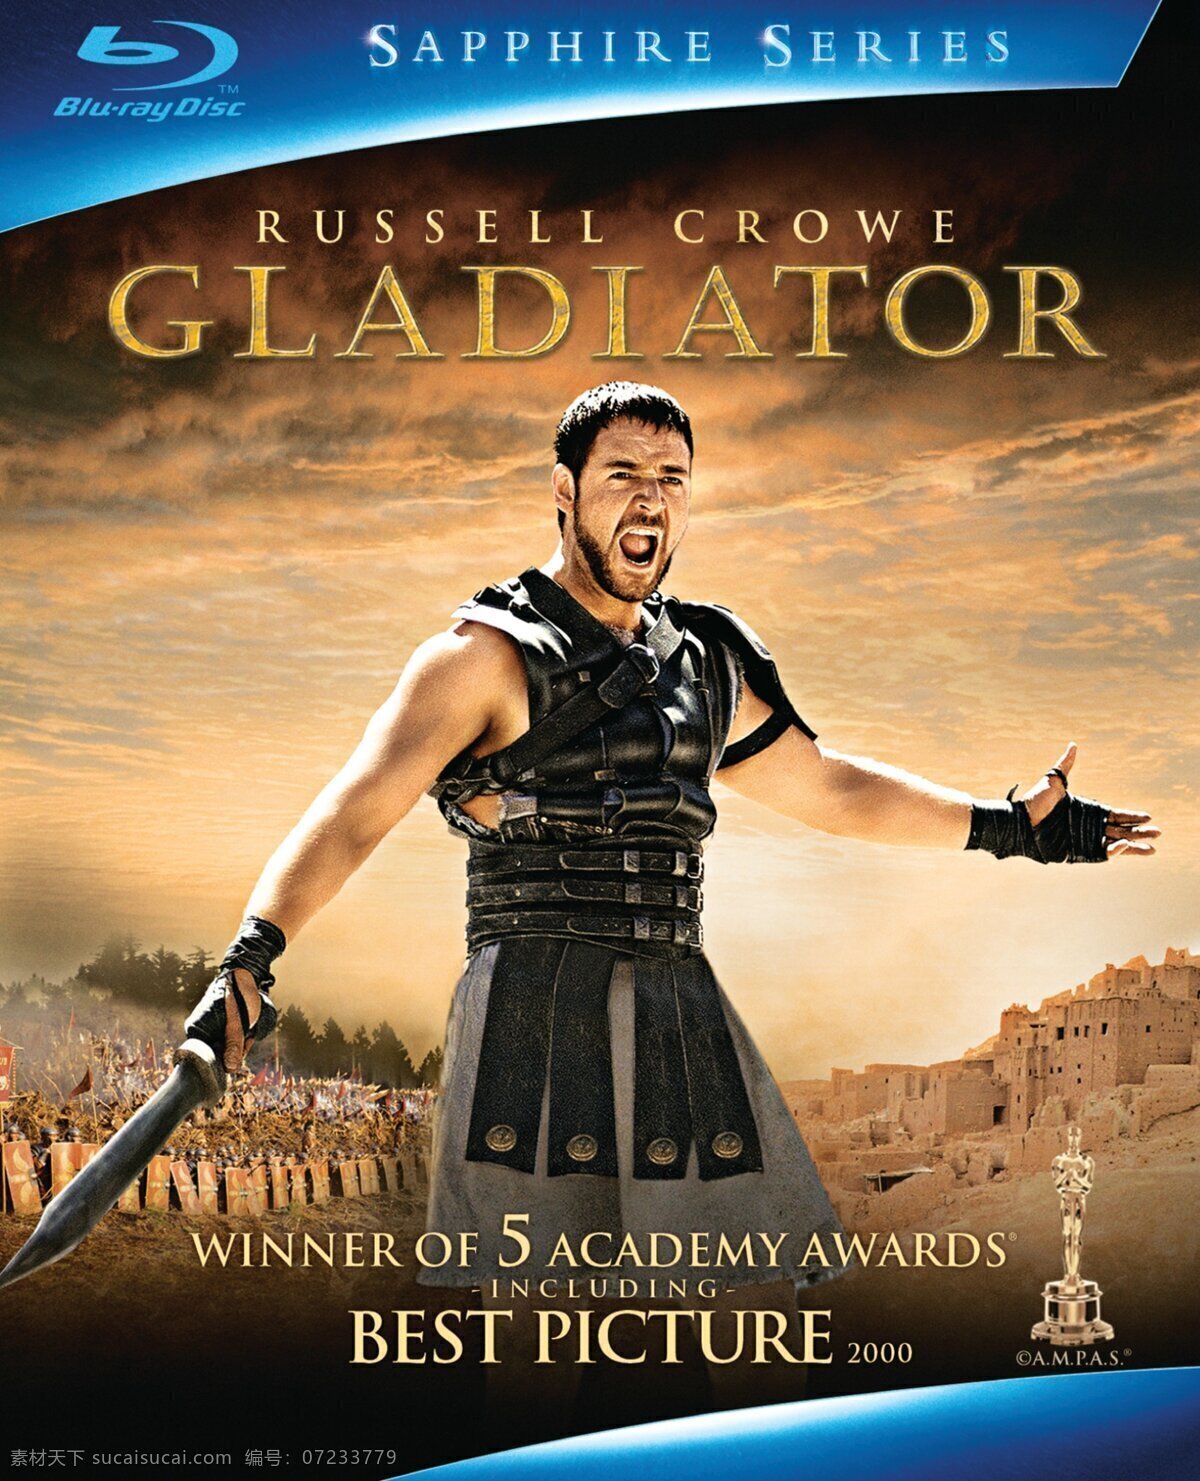 角斗士 gladiator 雷德利 斯科特 罗素 克 洛 乔 奎因 菲尼克斯 康妮 尼尔森 电影海报 电影 文化艺术 影视娱乐